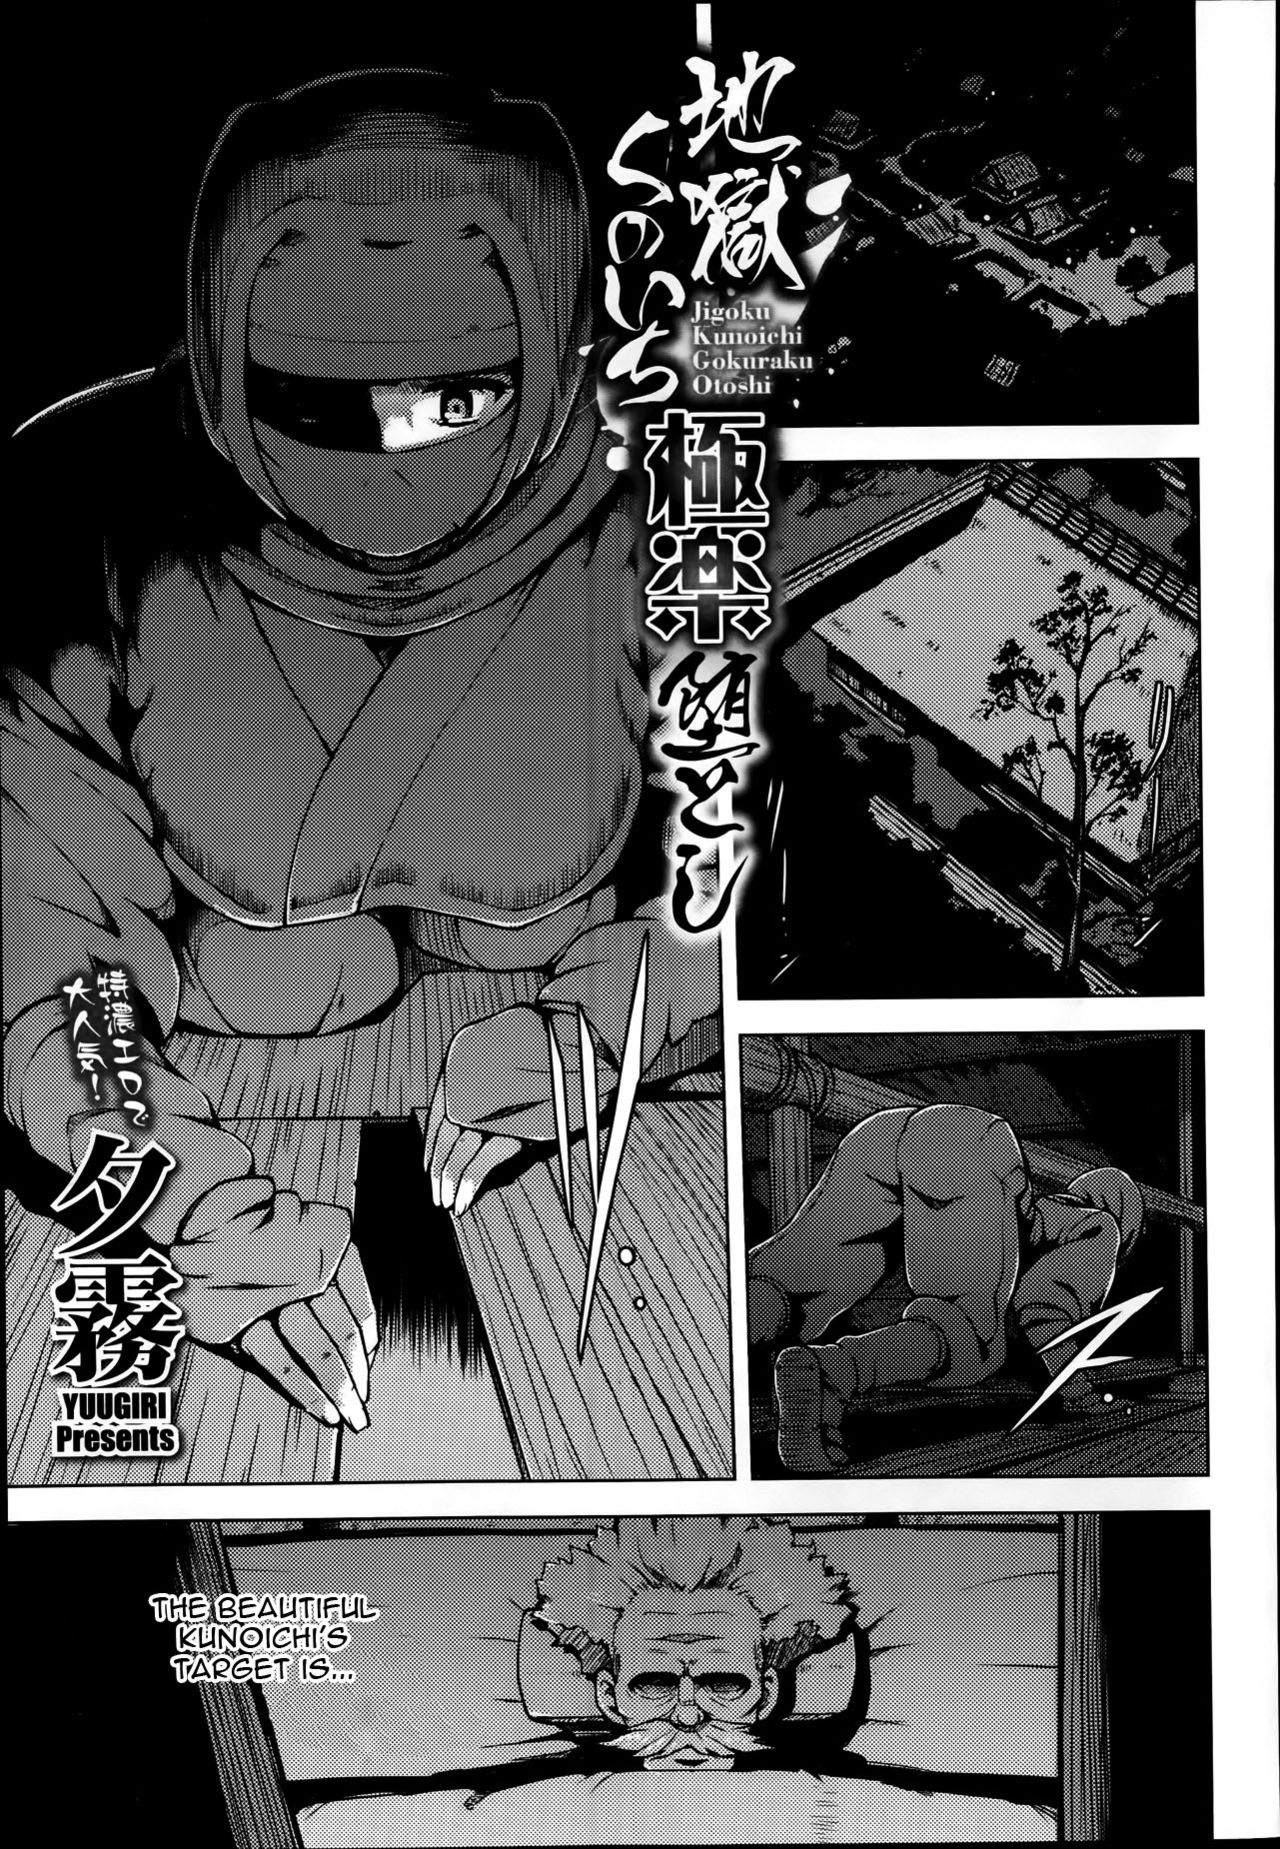 jigoku kunoichi gokuraku otoshi comic megastore alpha 2014 01 english constantly 00